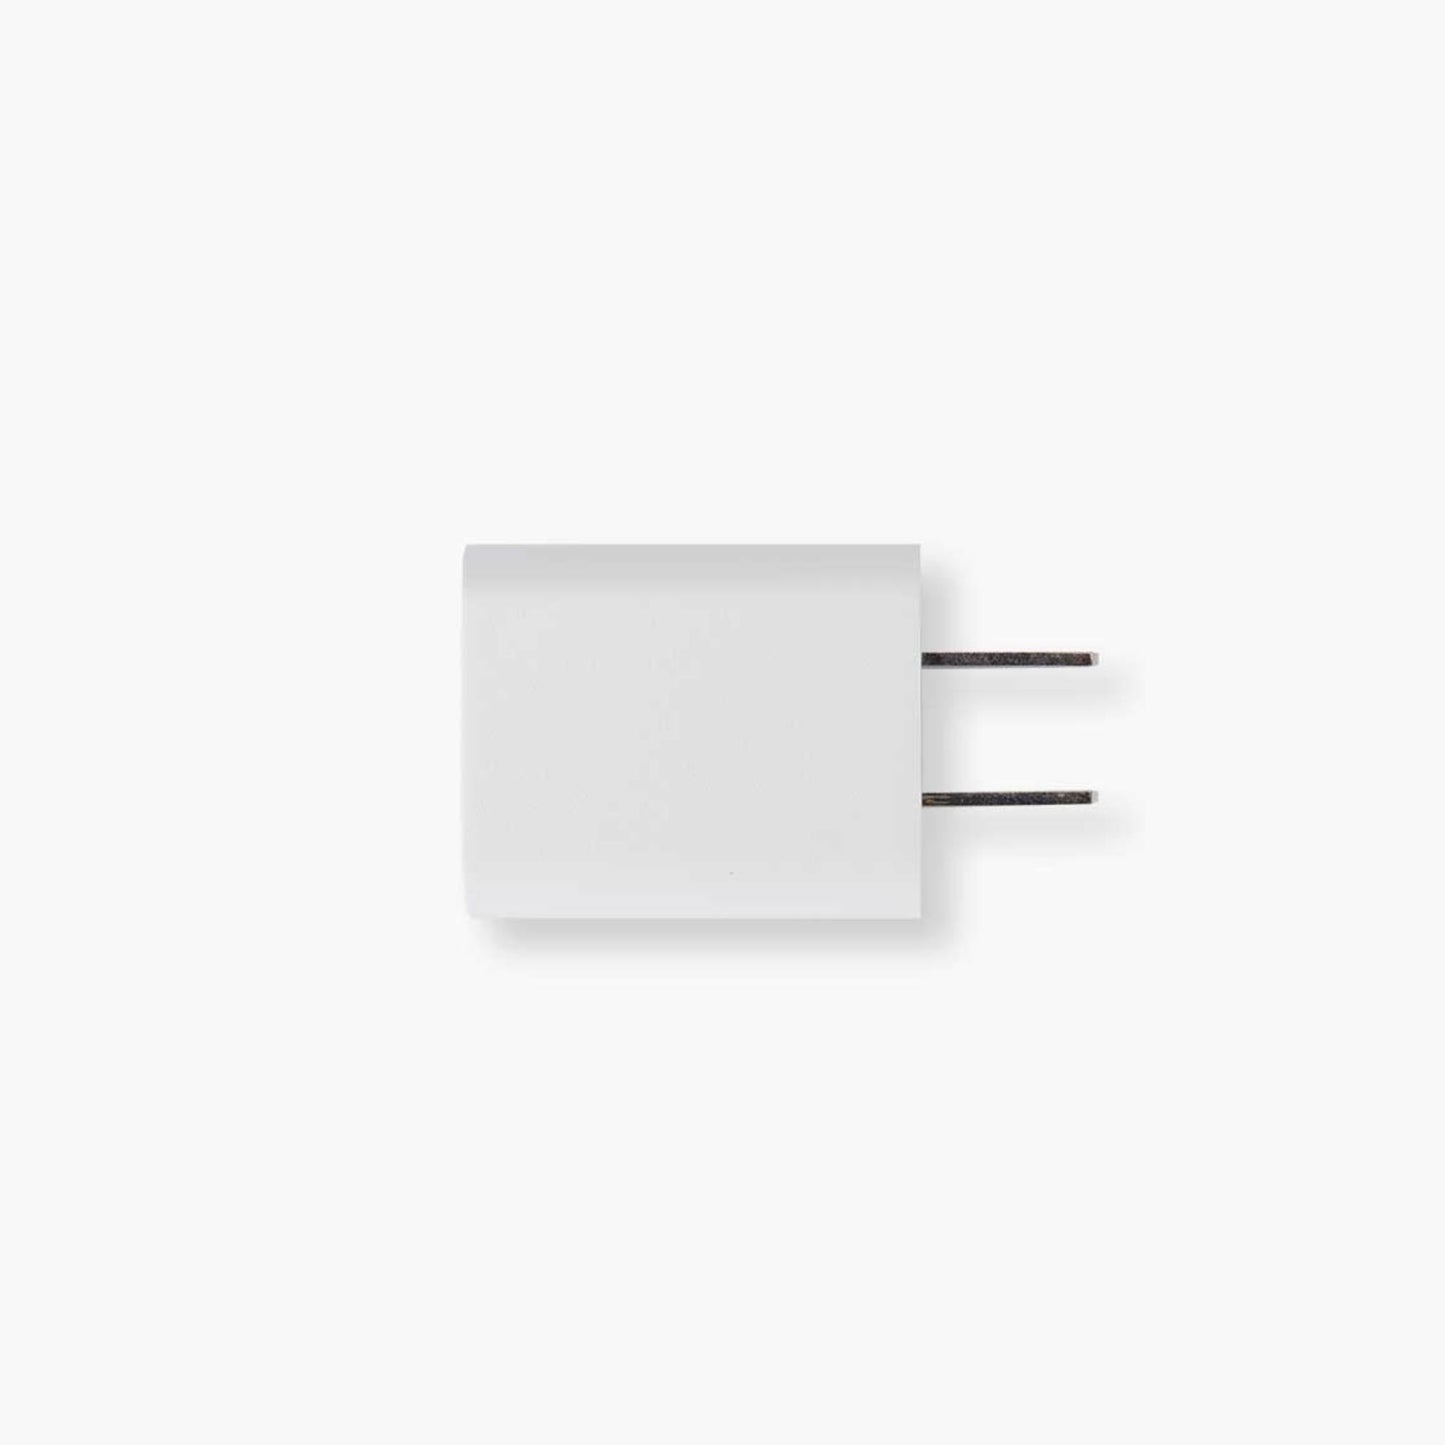 Adaptateur USB de rechange pour Catit PIXI